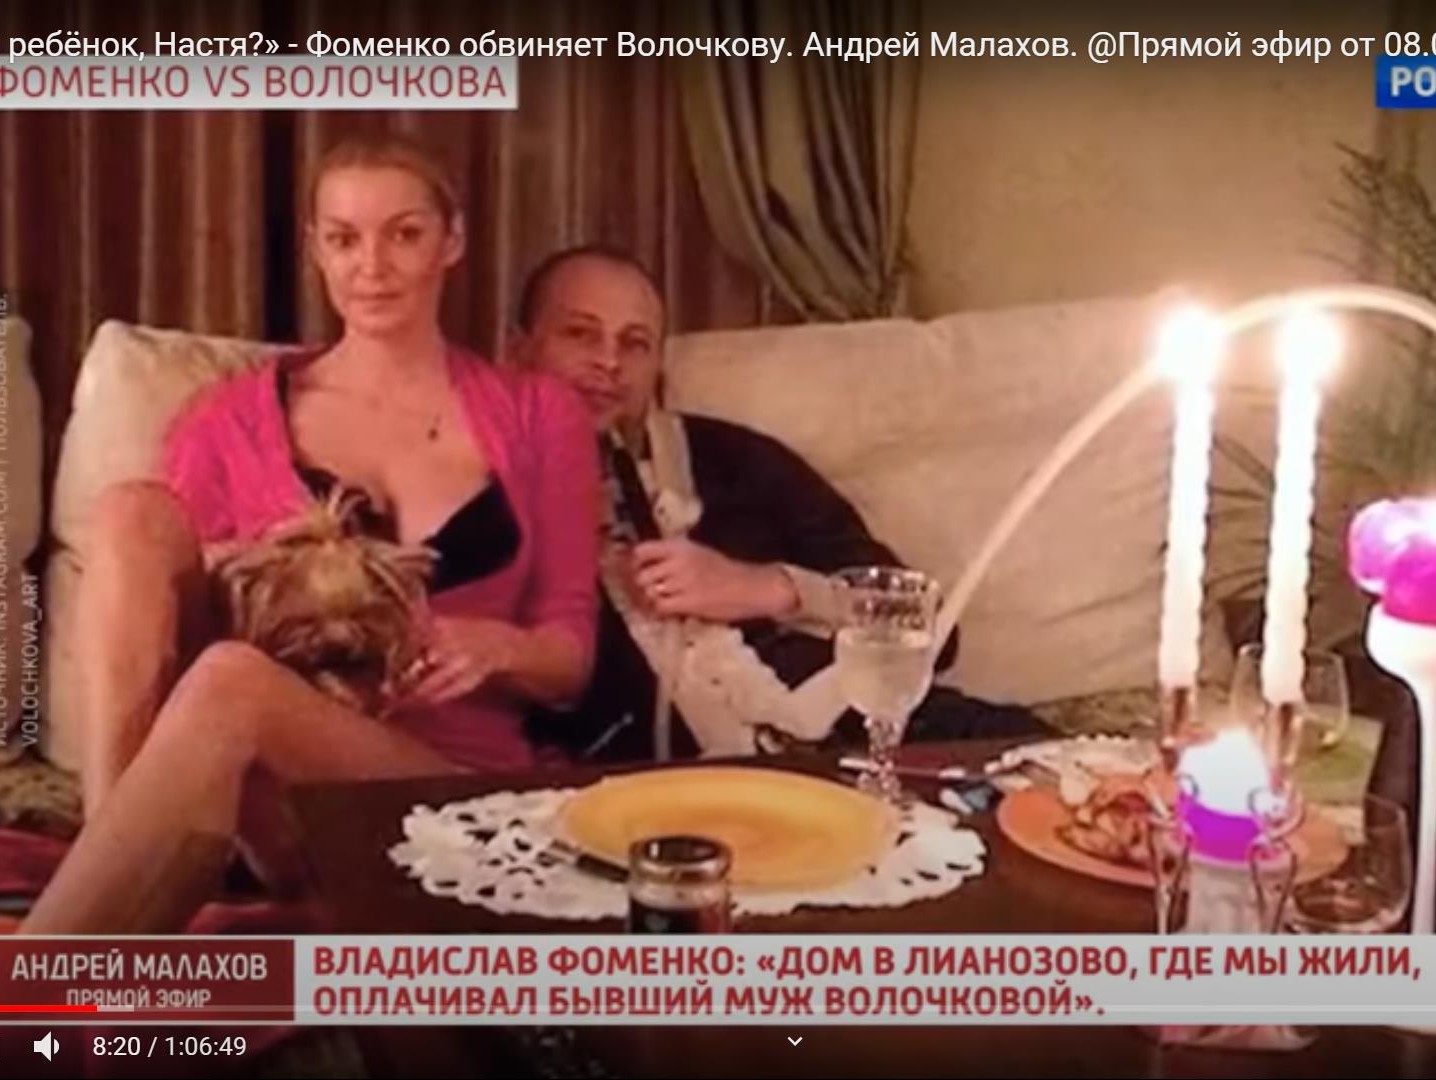 скрин с видео телеканала "Россия 1"